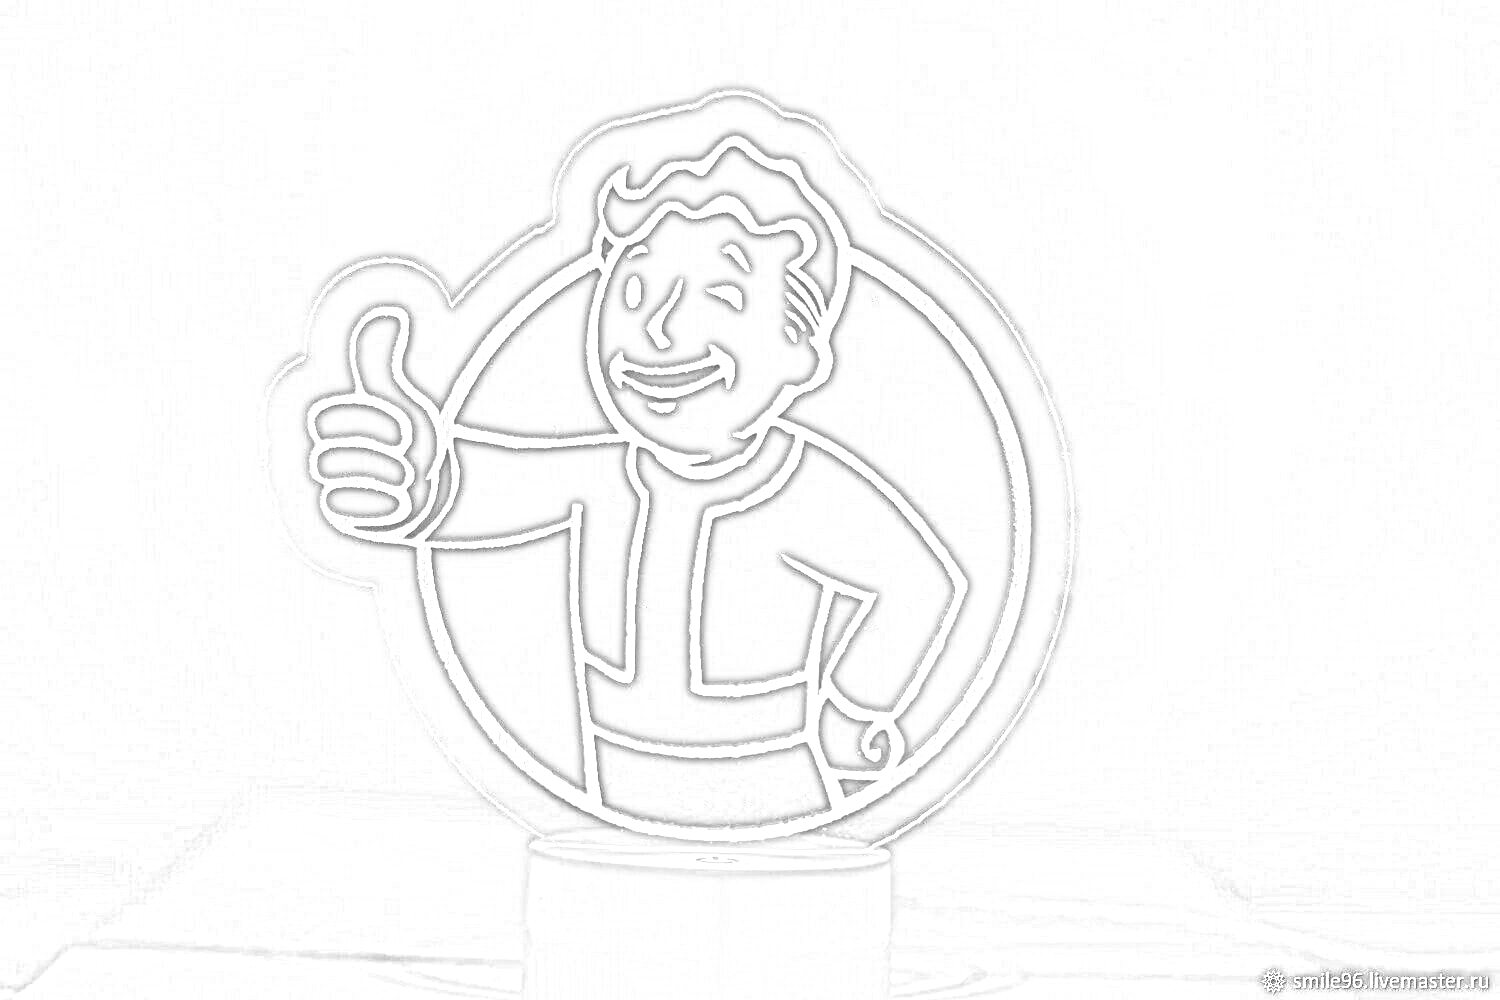 Раскраска Ночник с изображением улыбающегося персонажа, показывающего палец вверх